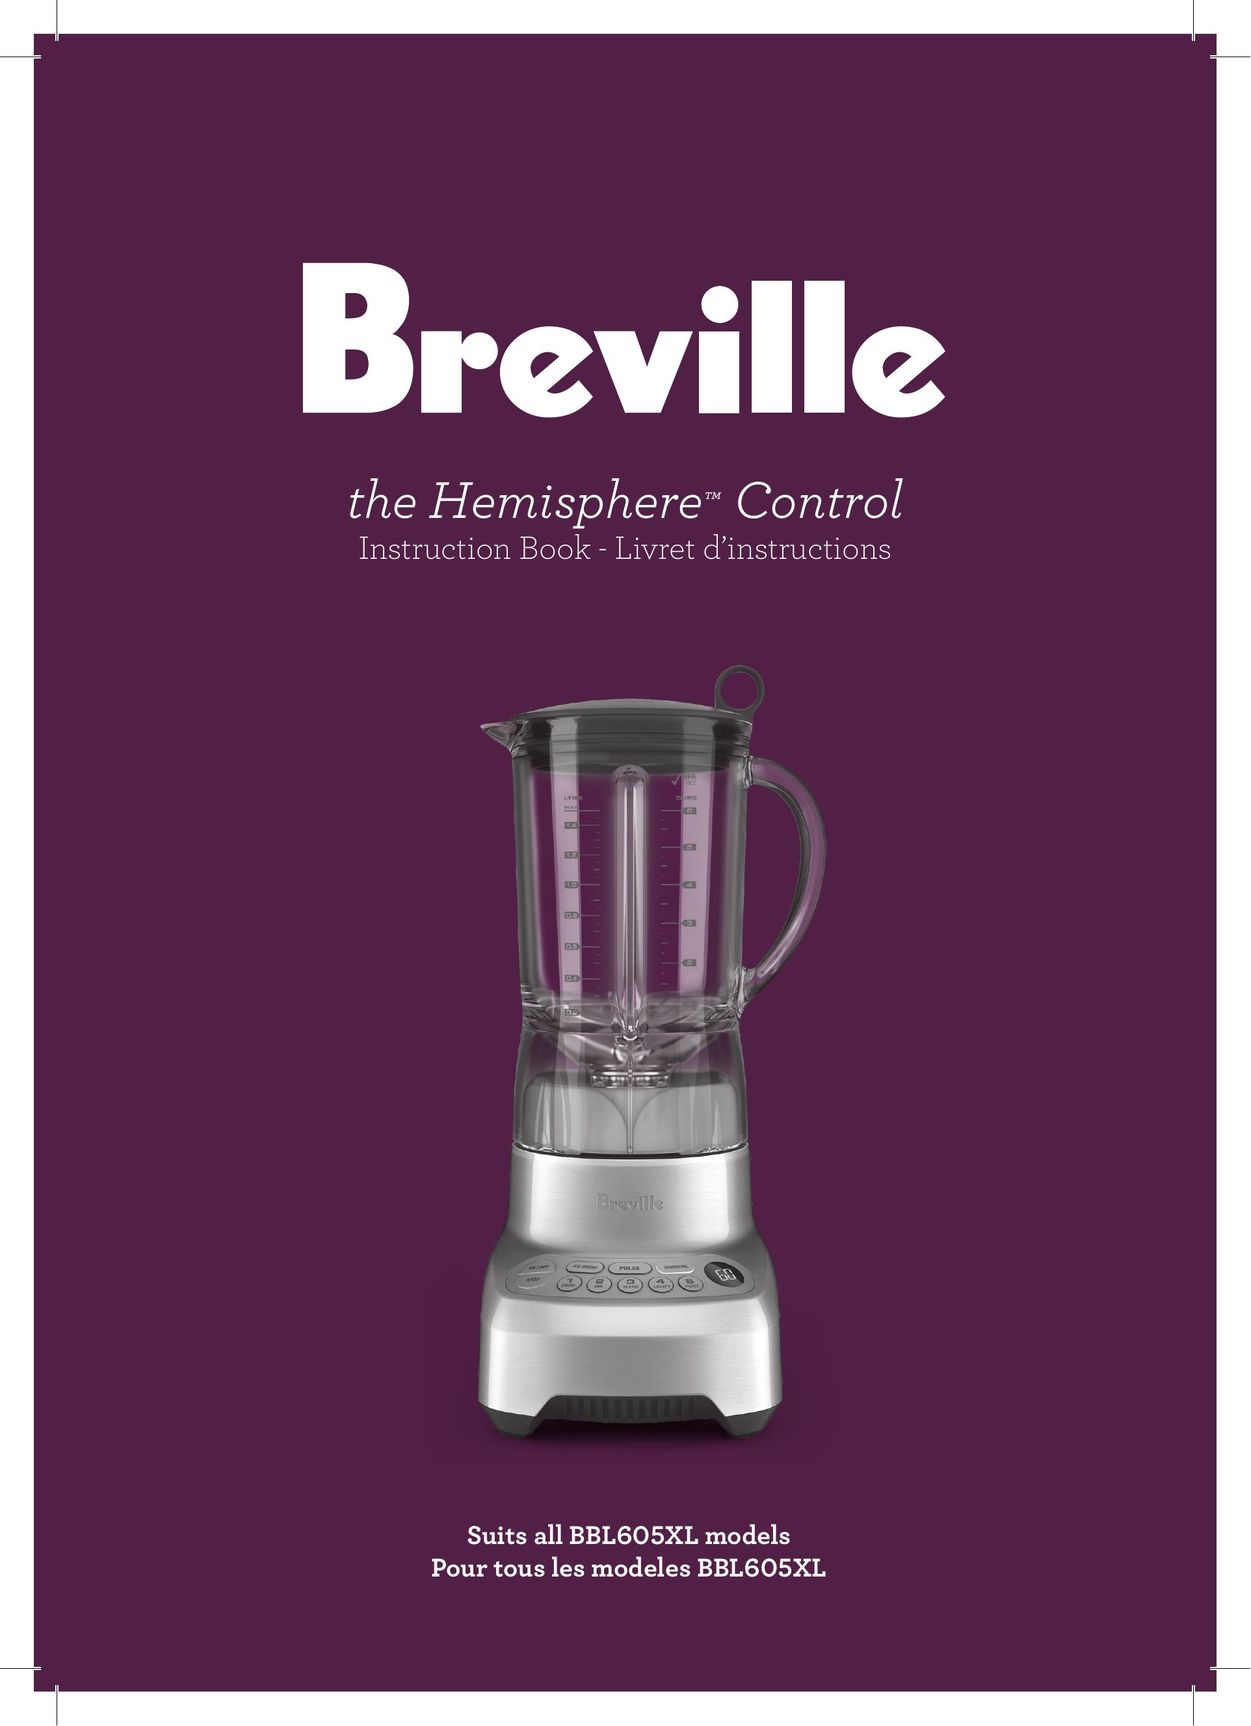 Breville Breville Blender User Manual